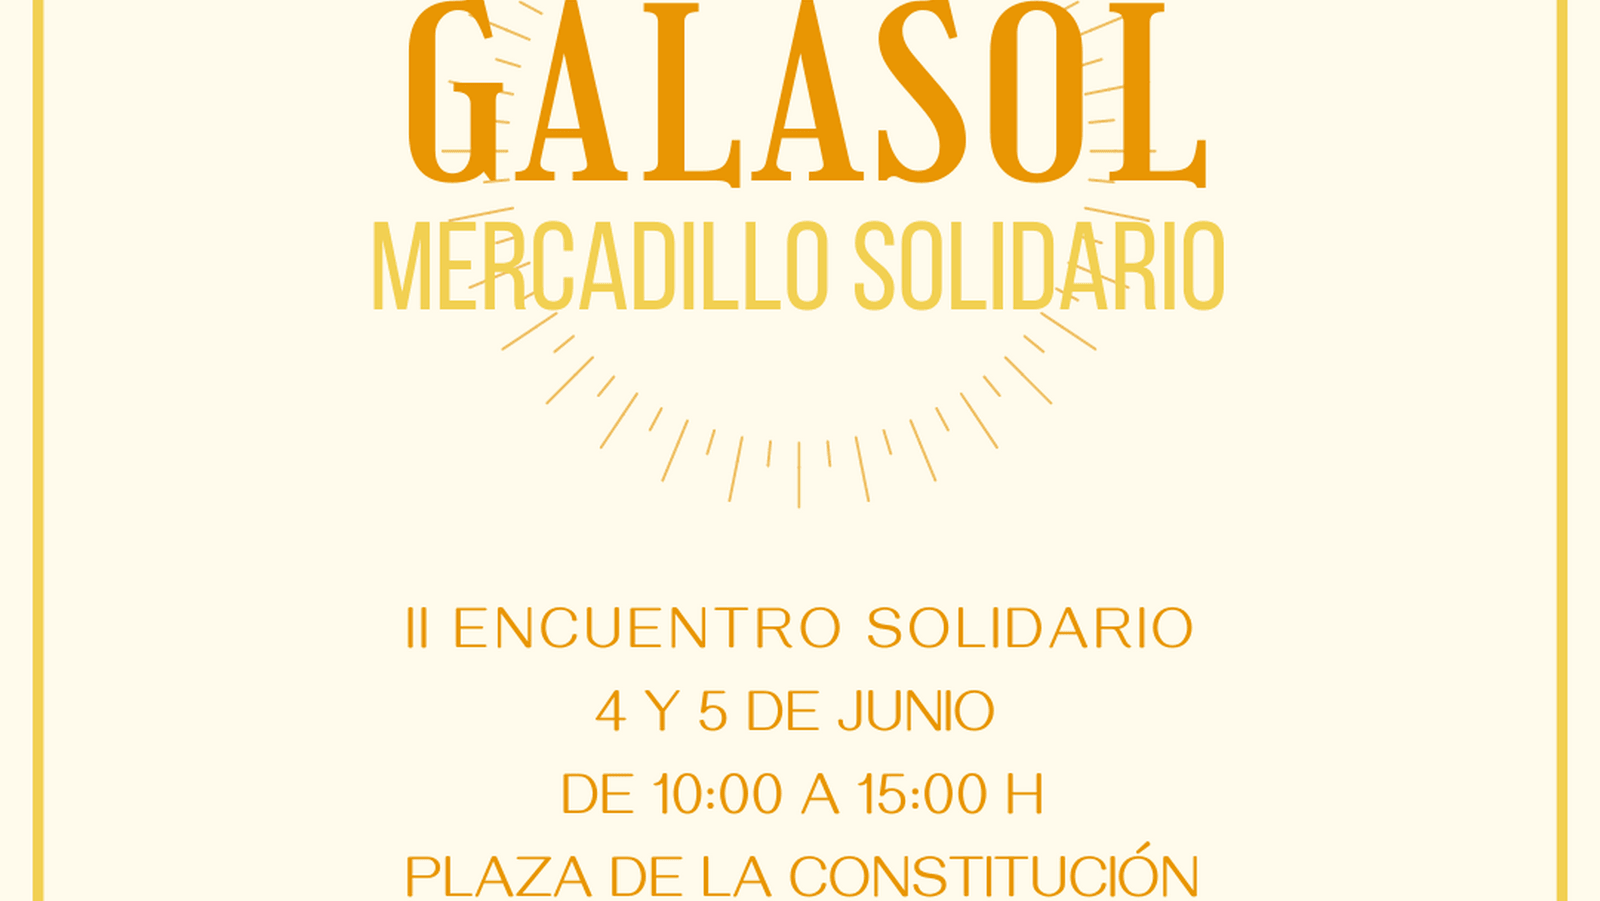 Vuelve “Galasol” con su II Encuentro Solidario los días 4 y  5 de junio